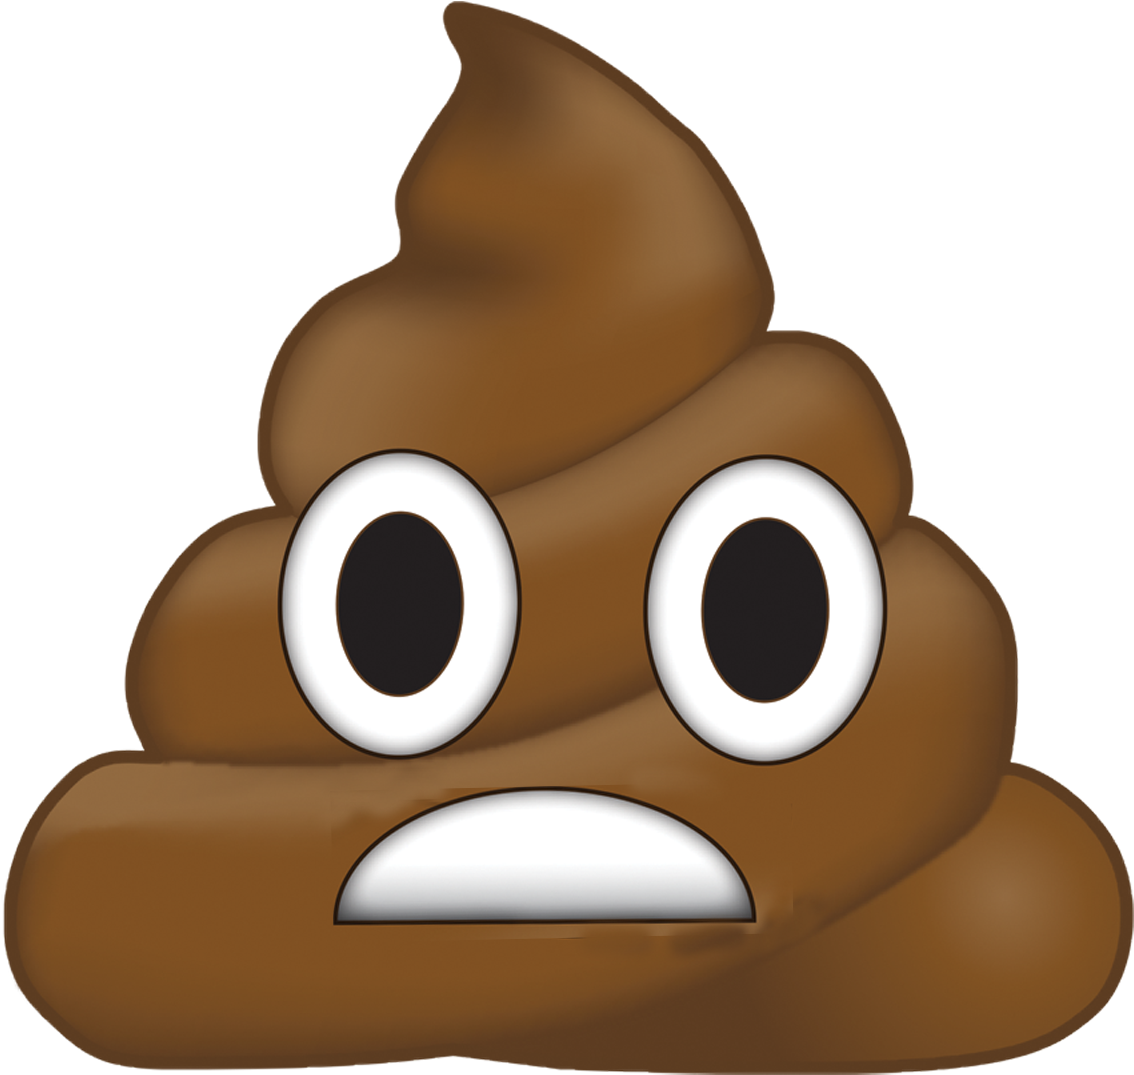 Poop Emoji Sticker (1200x1200)